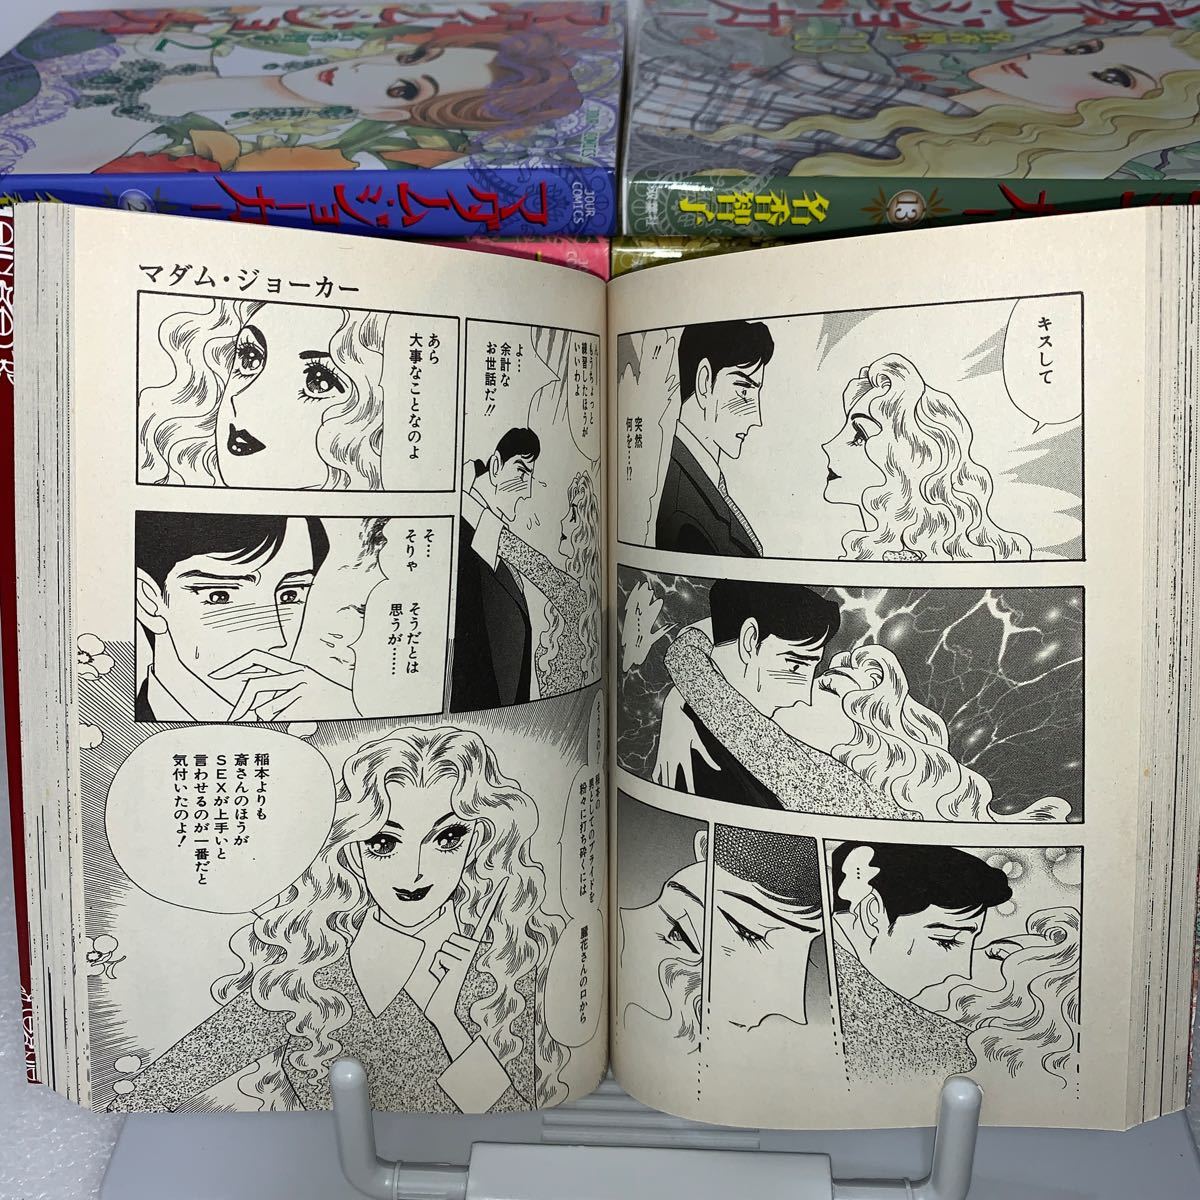 在庫一掃 マダム・ジョーカー 1〜24巻セット オフクーポン付|漫画,女性漫画 - rustavi.gov.ge